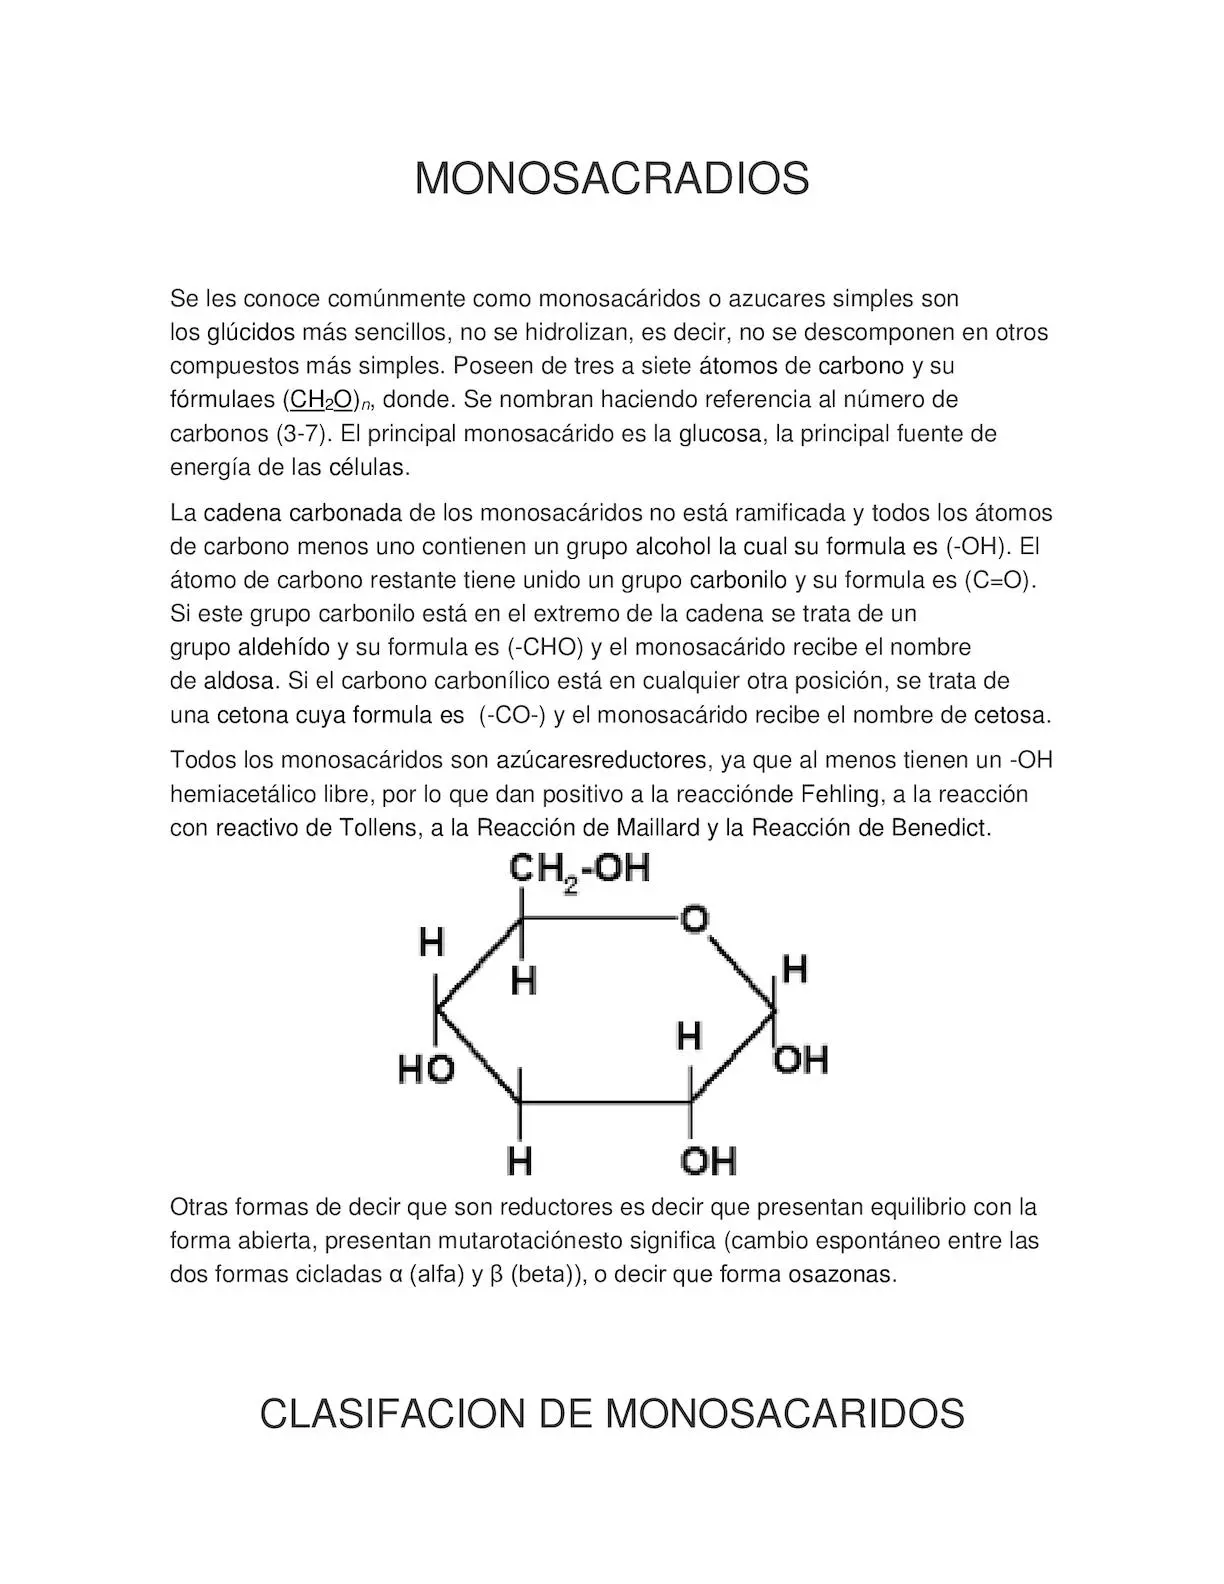 monosacaridos resumen - Qué son los monosacáridos y cómo se clasifican